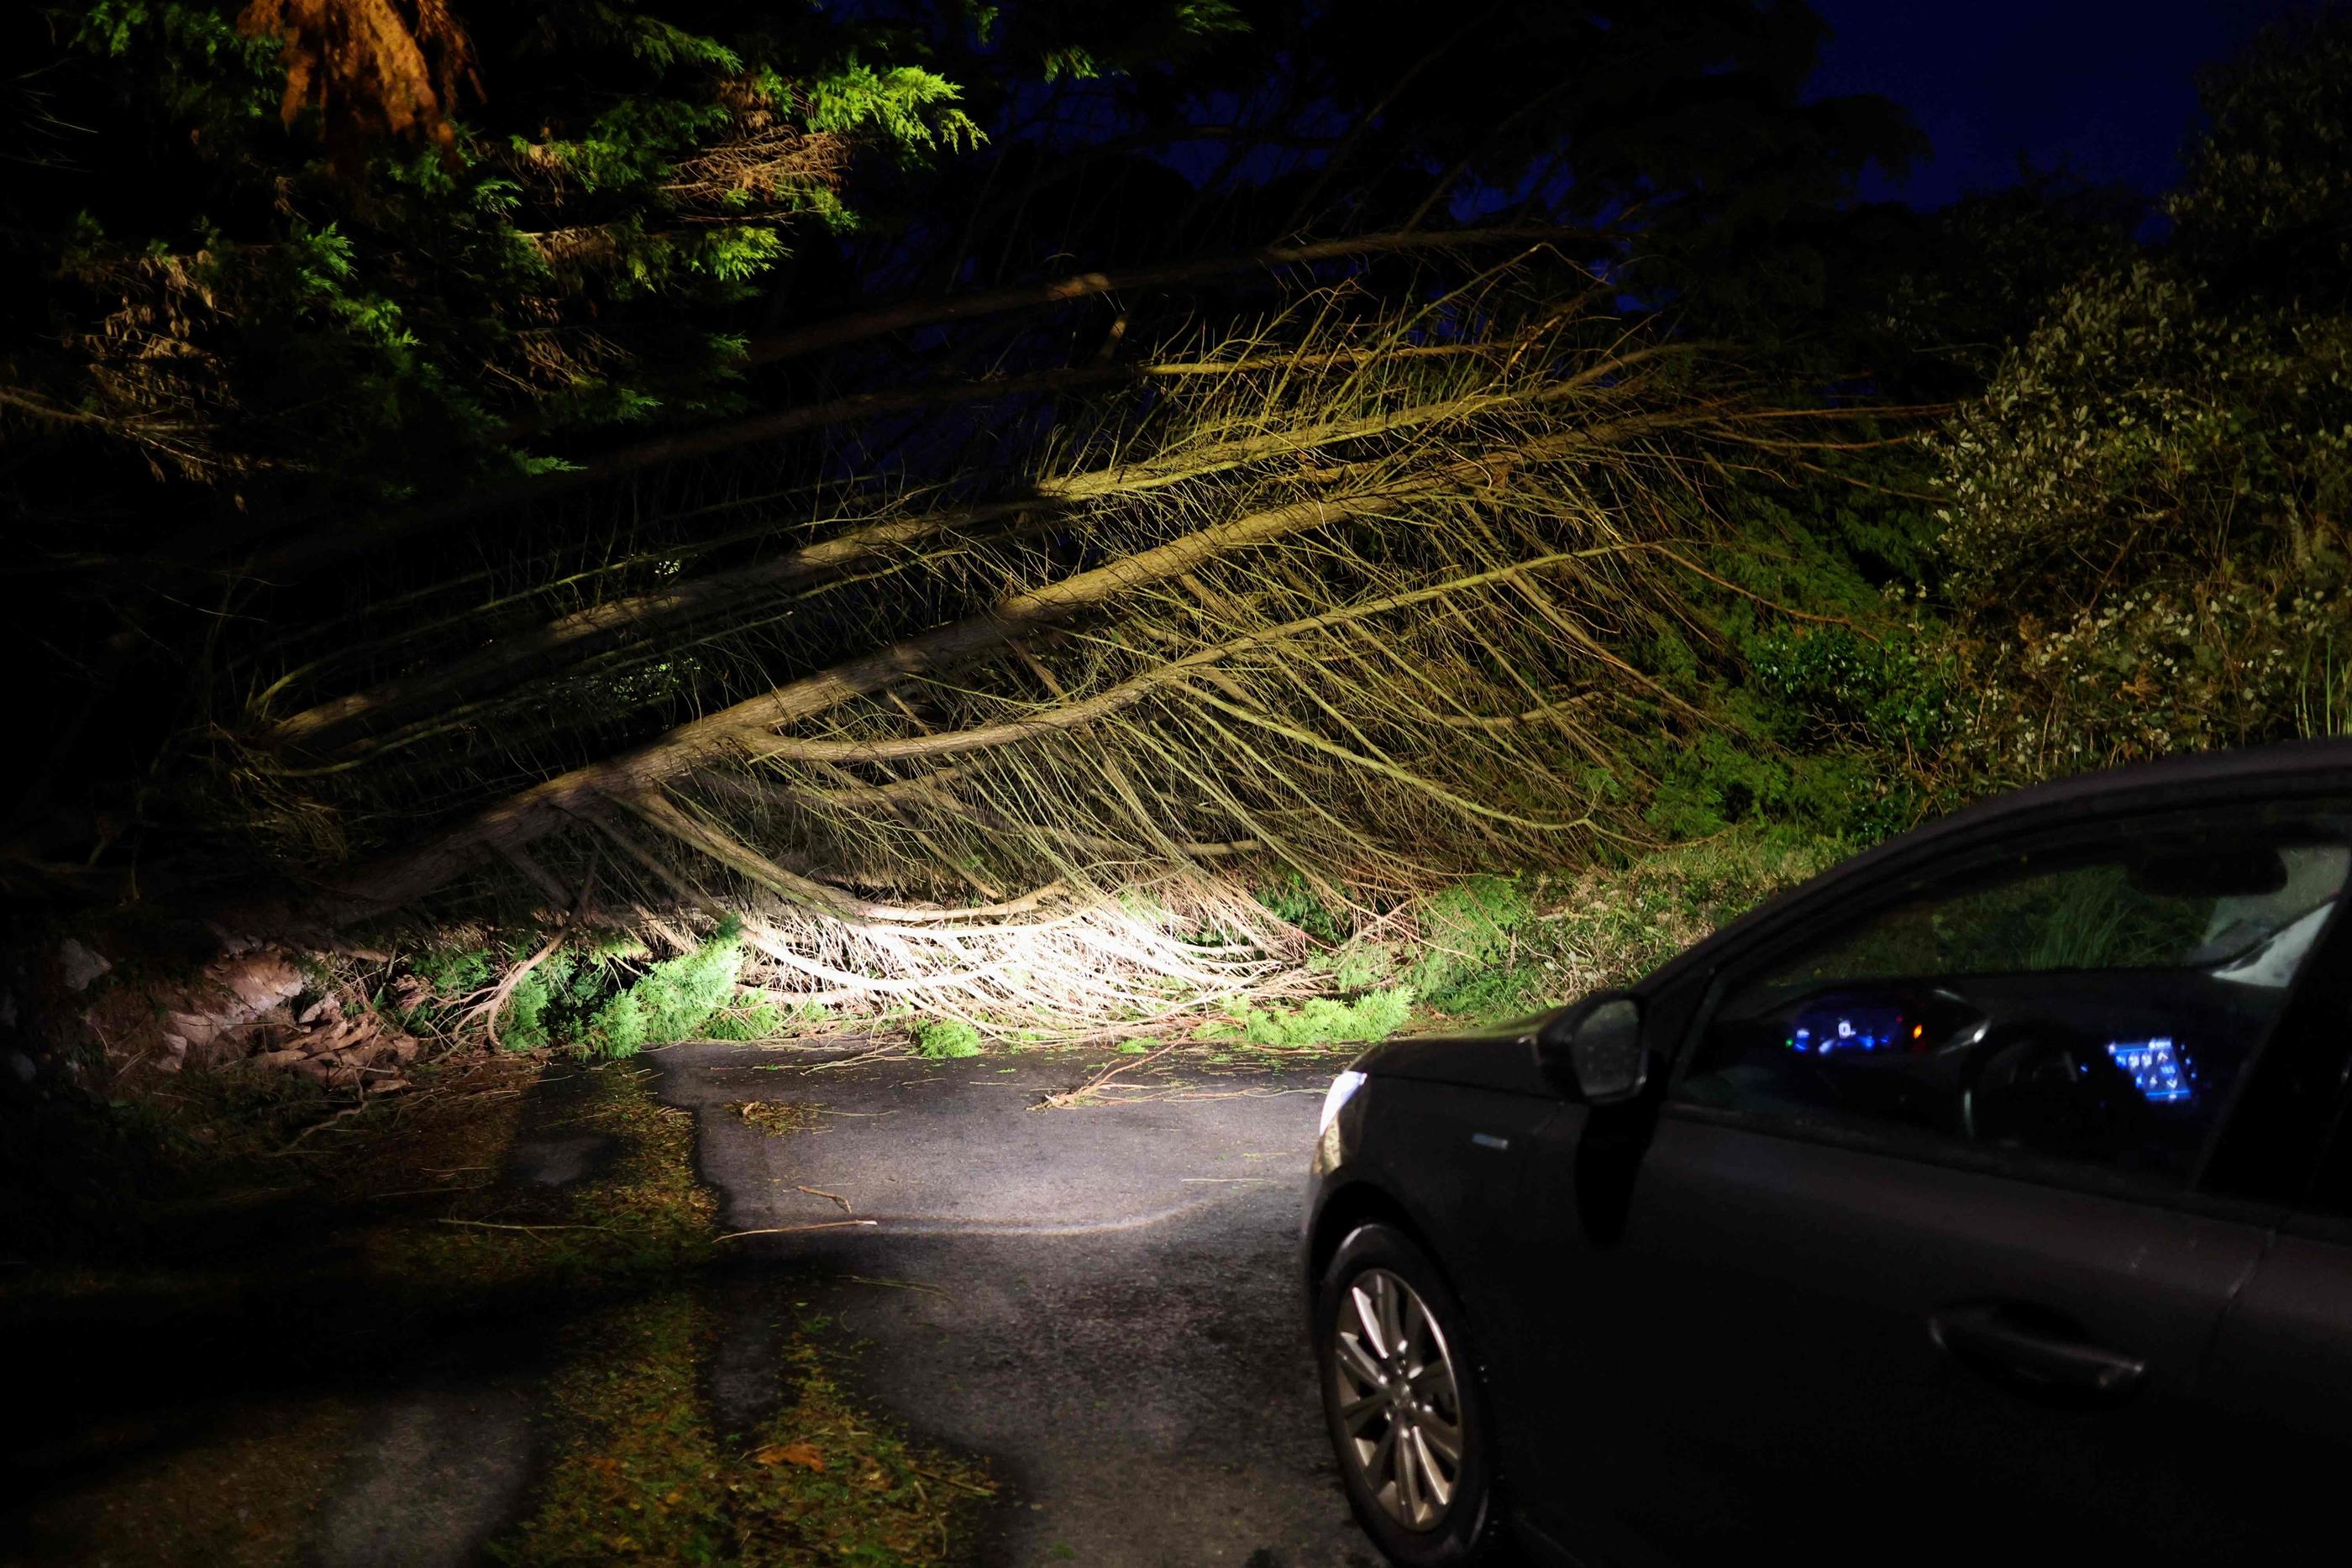 L’accident a eu lieu vers 4h30 du matin ce jeudi, sur une route départementale de l'Aisne, lorsque les rafales de vent ont provoqué la chute d'un arbre. (Illustration) AFP/FRED TANNEAU